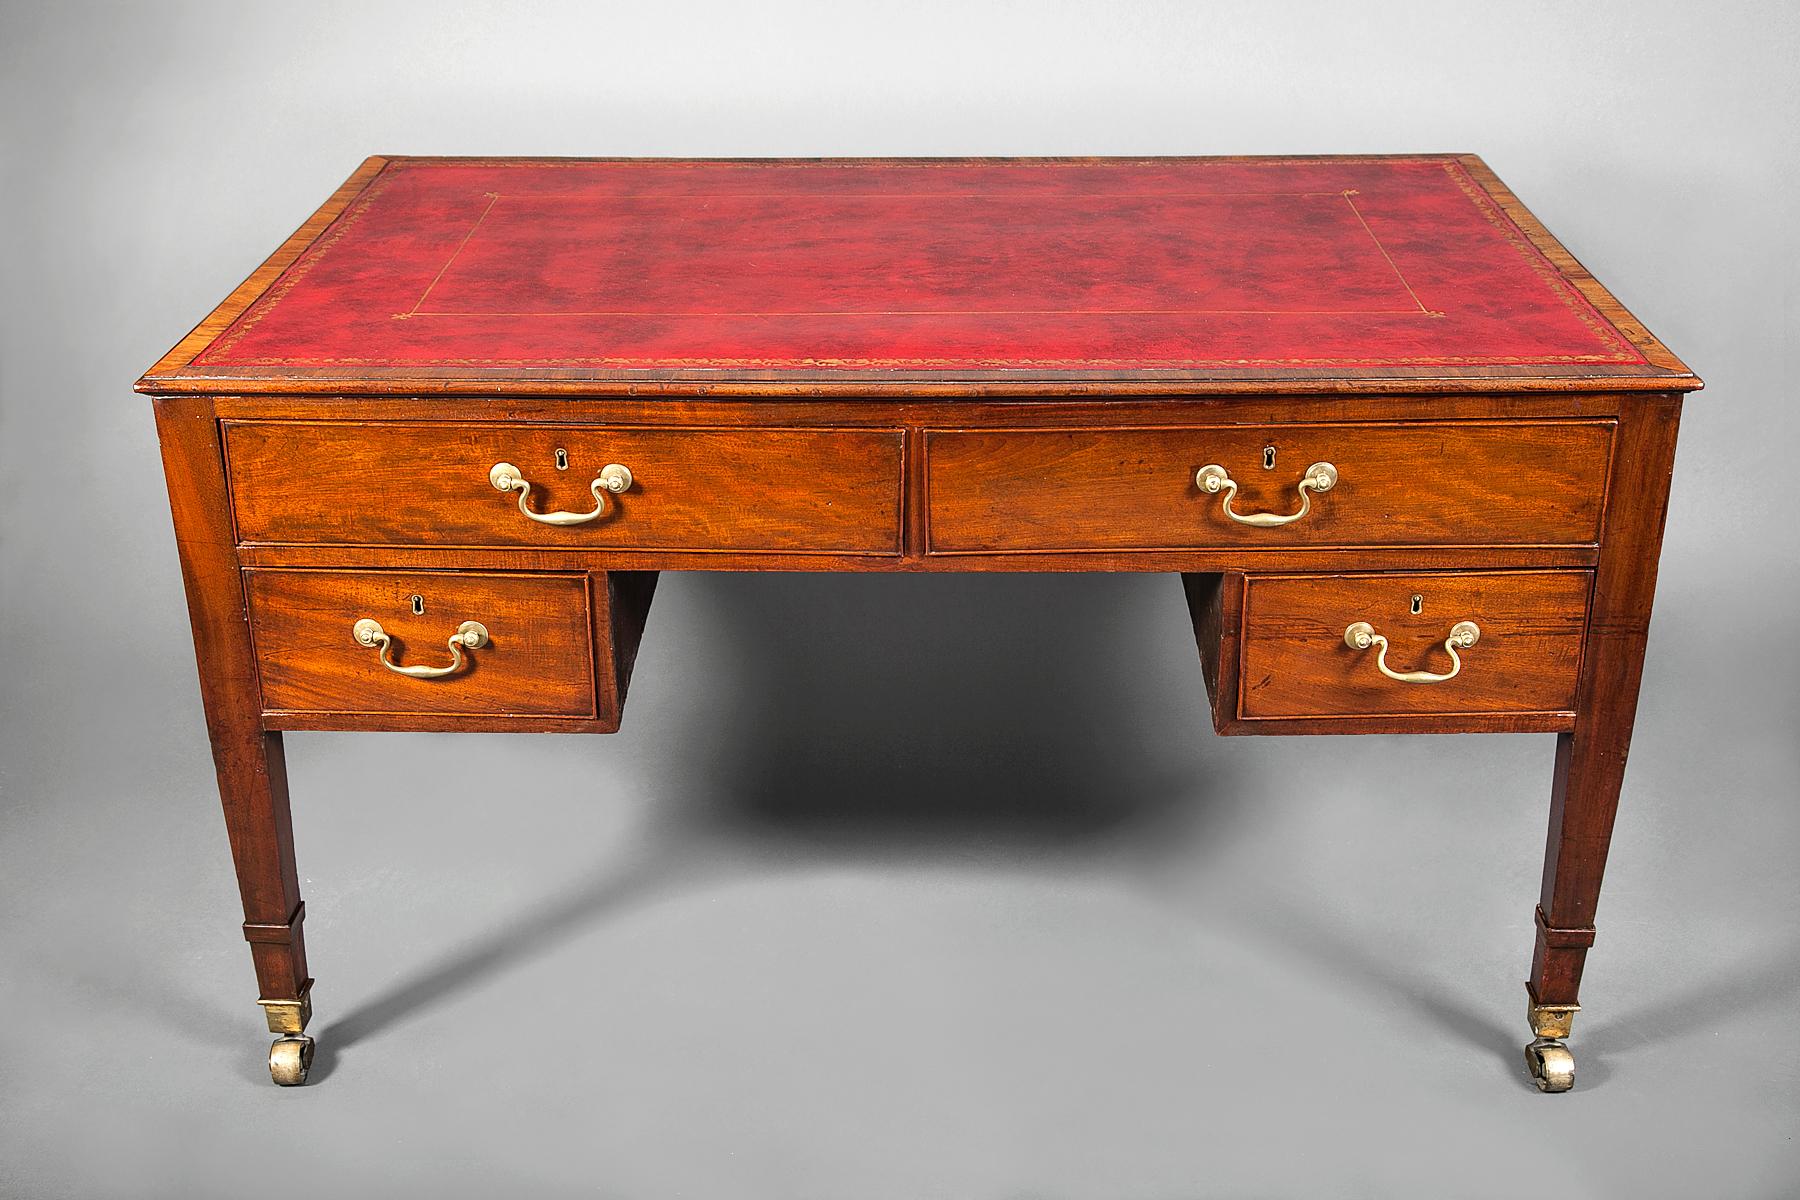 Bureau des partenaires de George III. Dessus en cuir rouge et garnitures dorées avec montures en bronze. Quatre tiroirs d'un côté, cinq tiroirs de l'autre.